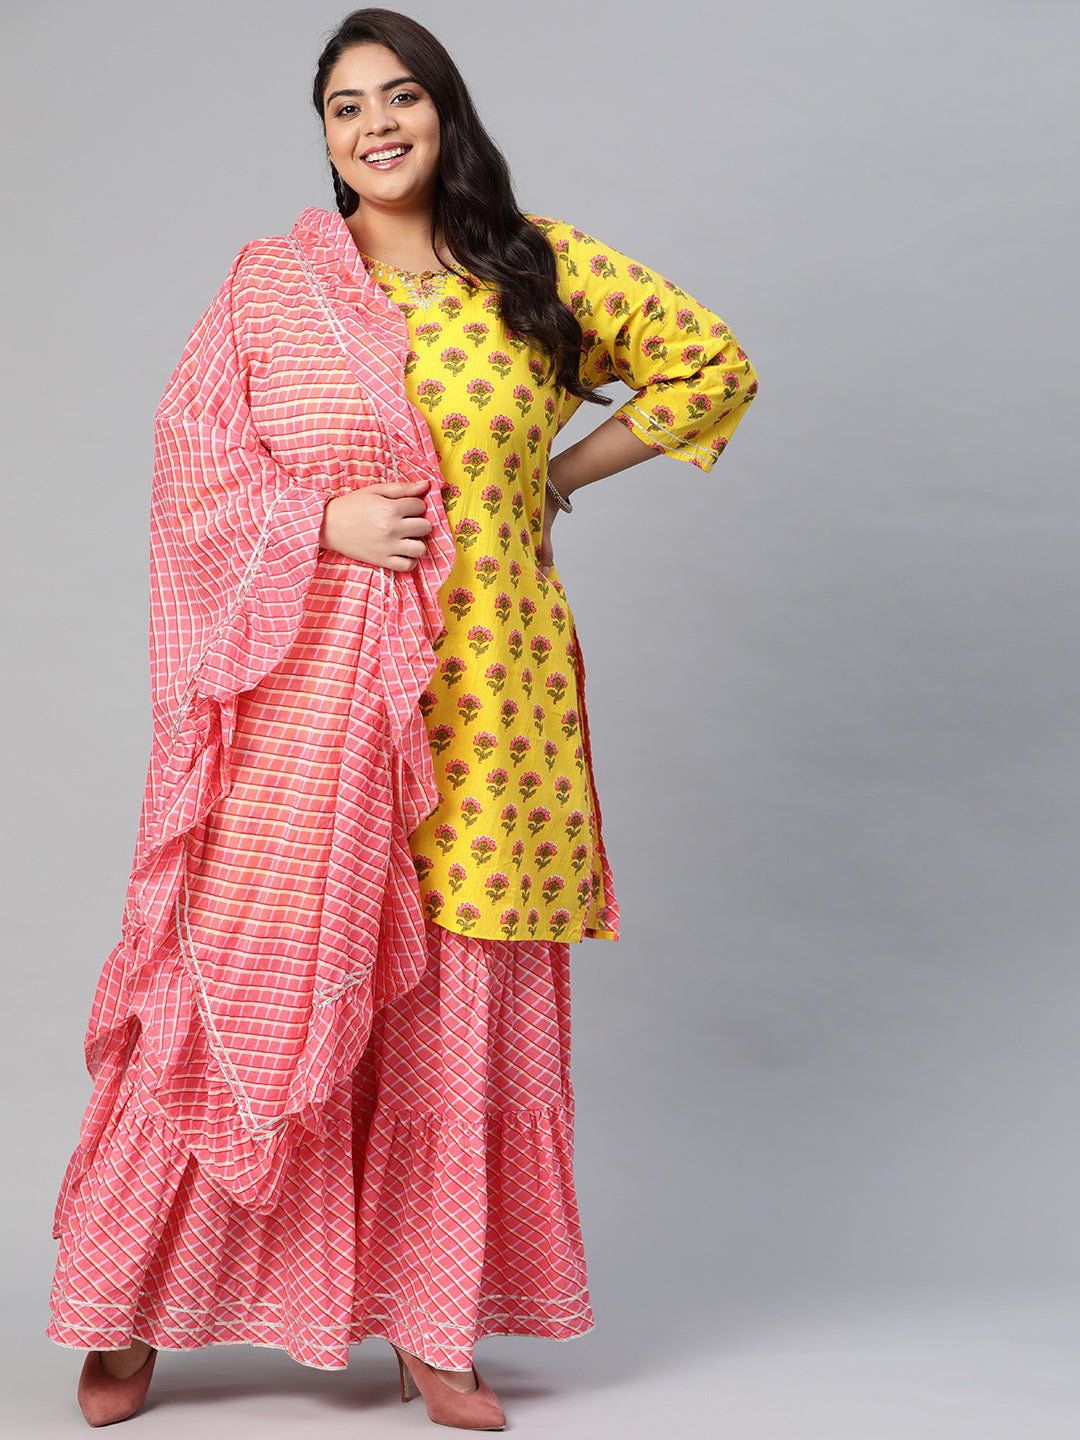 Women's Yellow Printed Kurta With Lahariya Sharara And Ruffled Dupatta Set - Noz2Toz